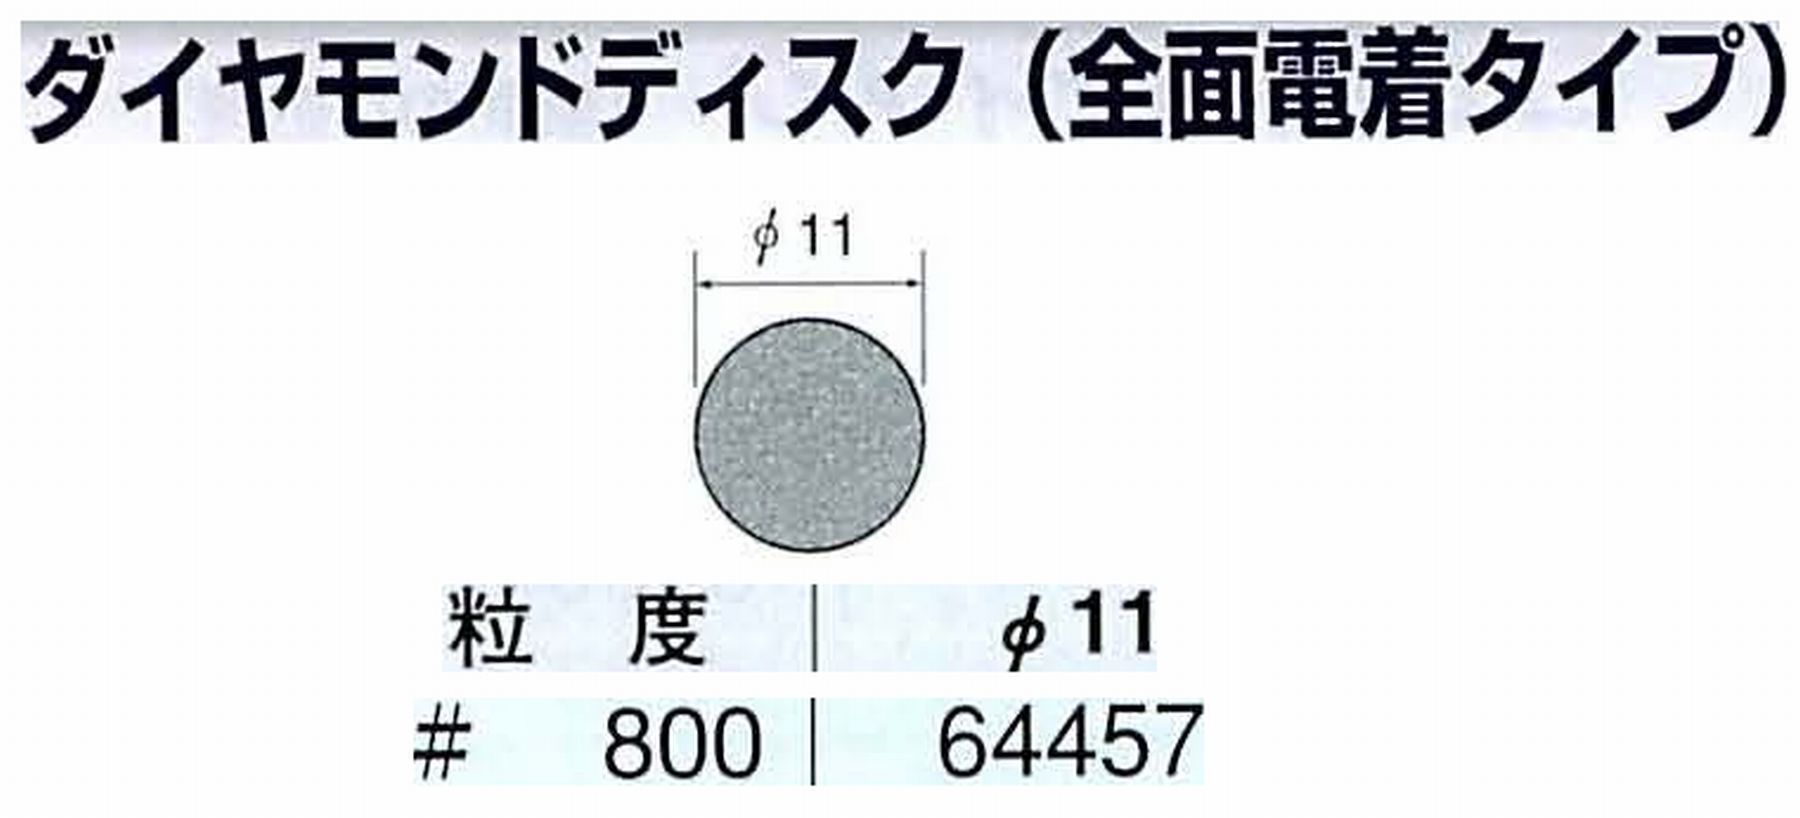 ナカニシ/NAKANISHI アングルグラインダ(電動・エアー) アングルアタッチメント専用工具 ダイヤモンドディスク(全面電着タイプ) 64457